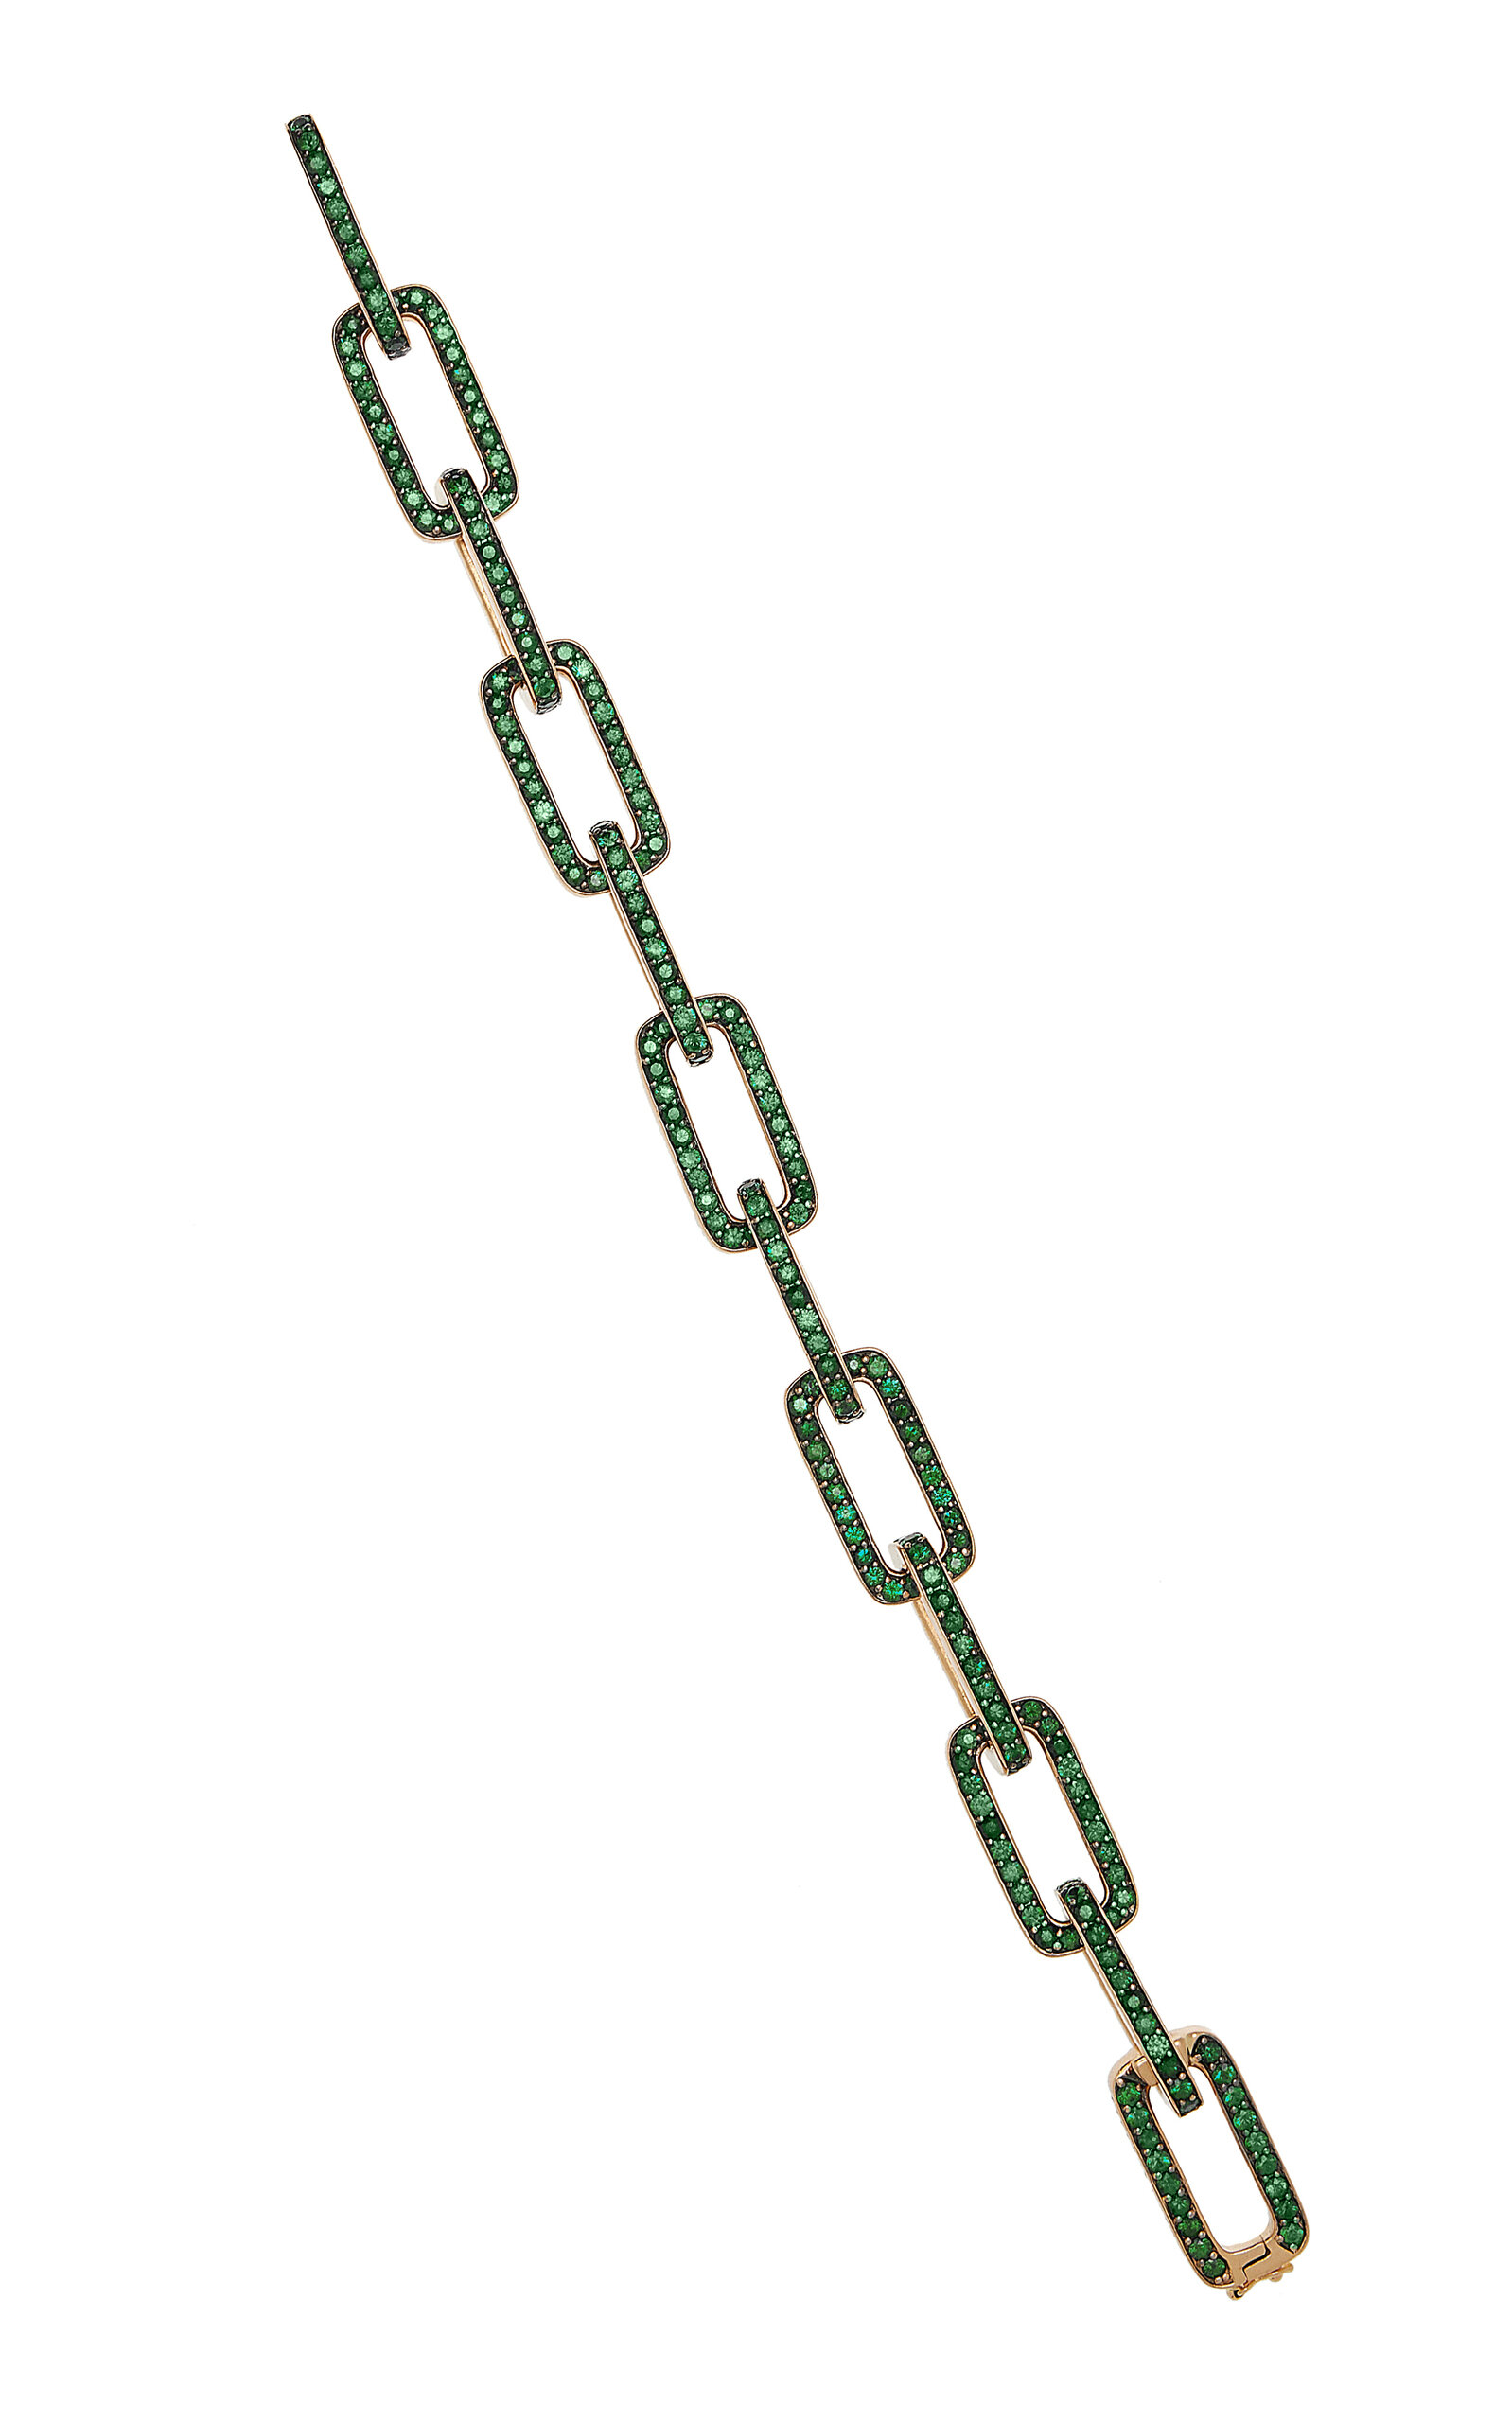 Piranesi Women's 18K Gold Mosaique Link Bracelet in Green Tsavorite